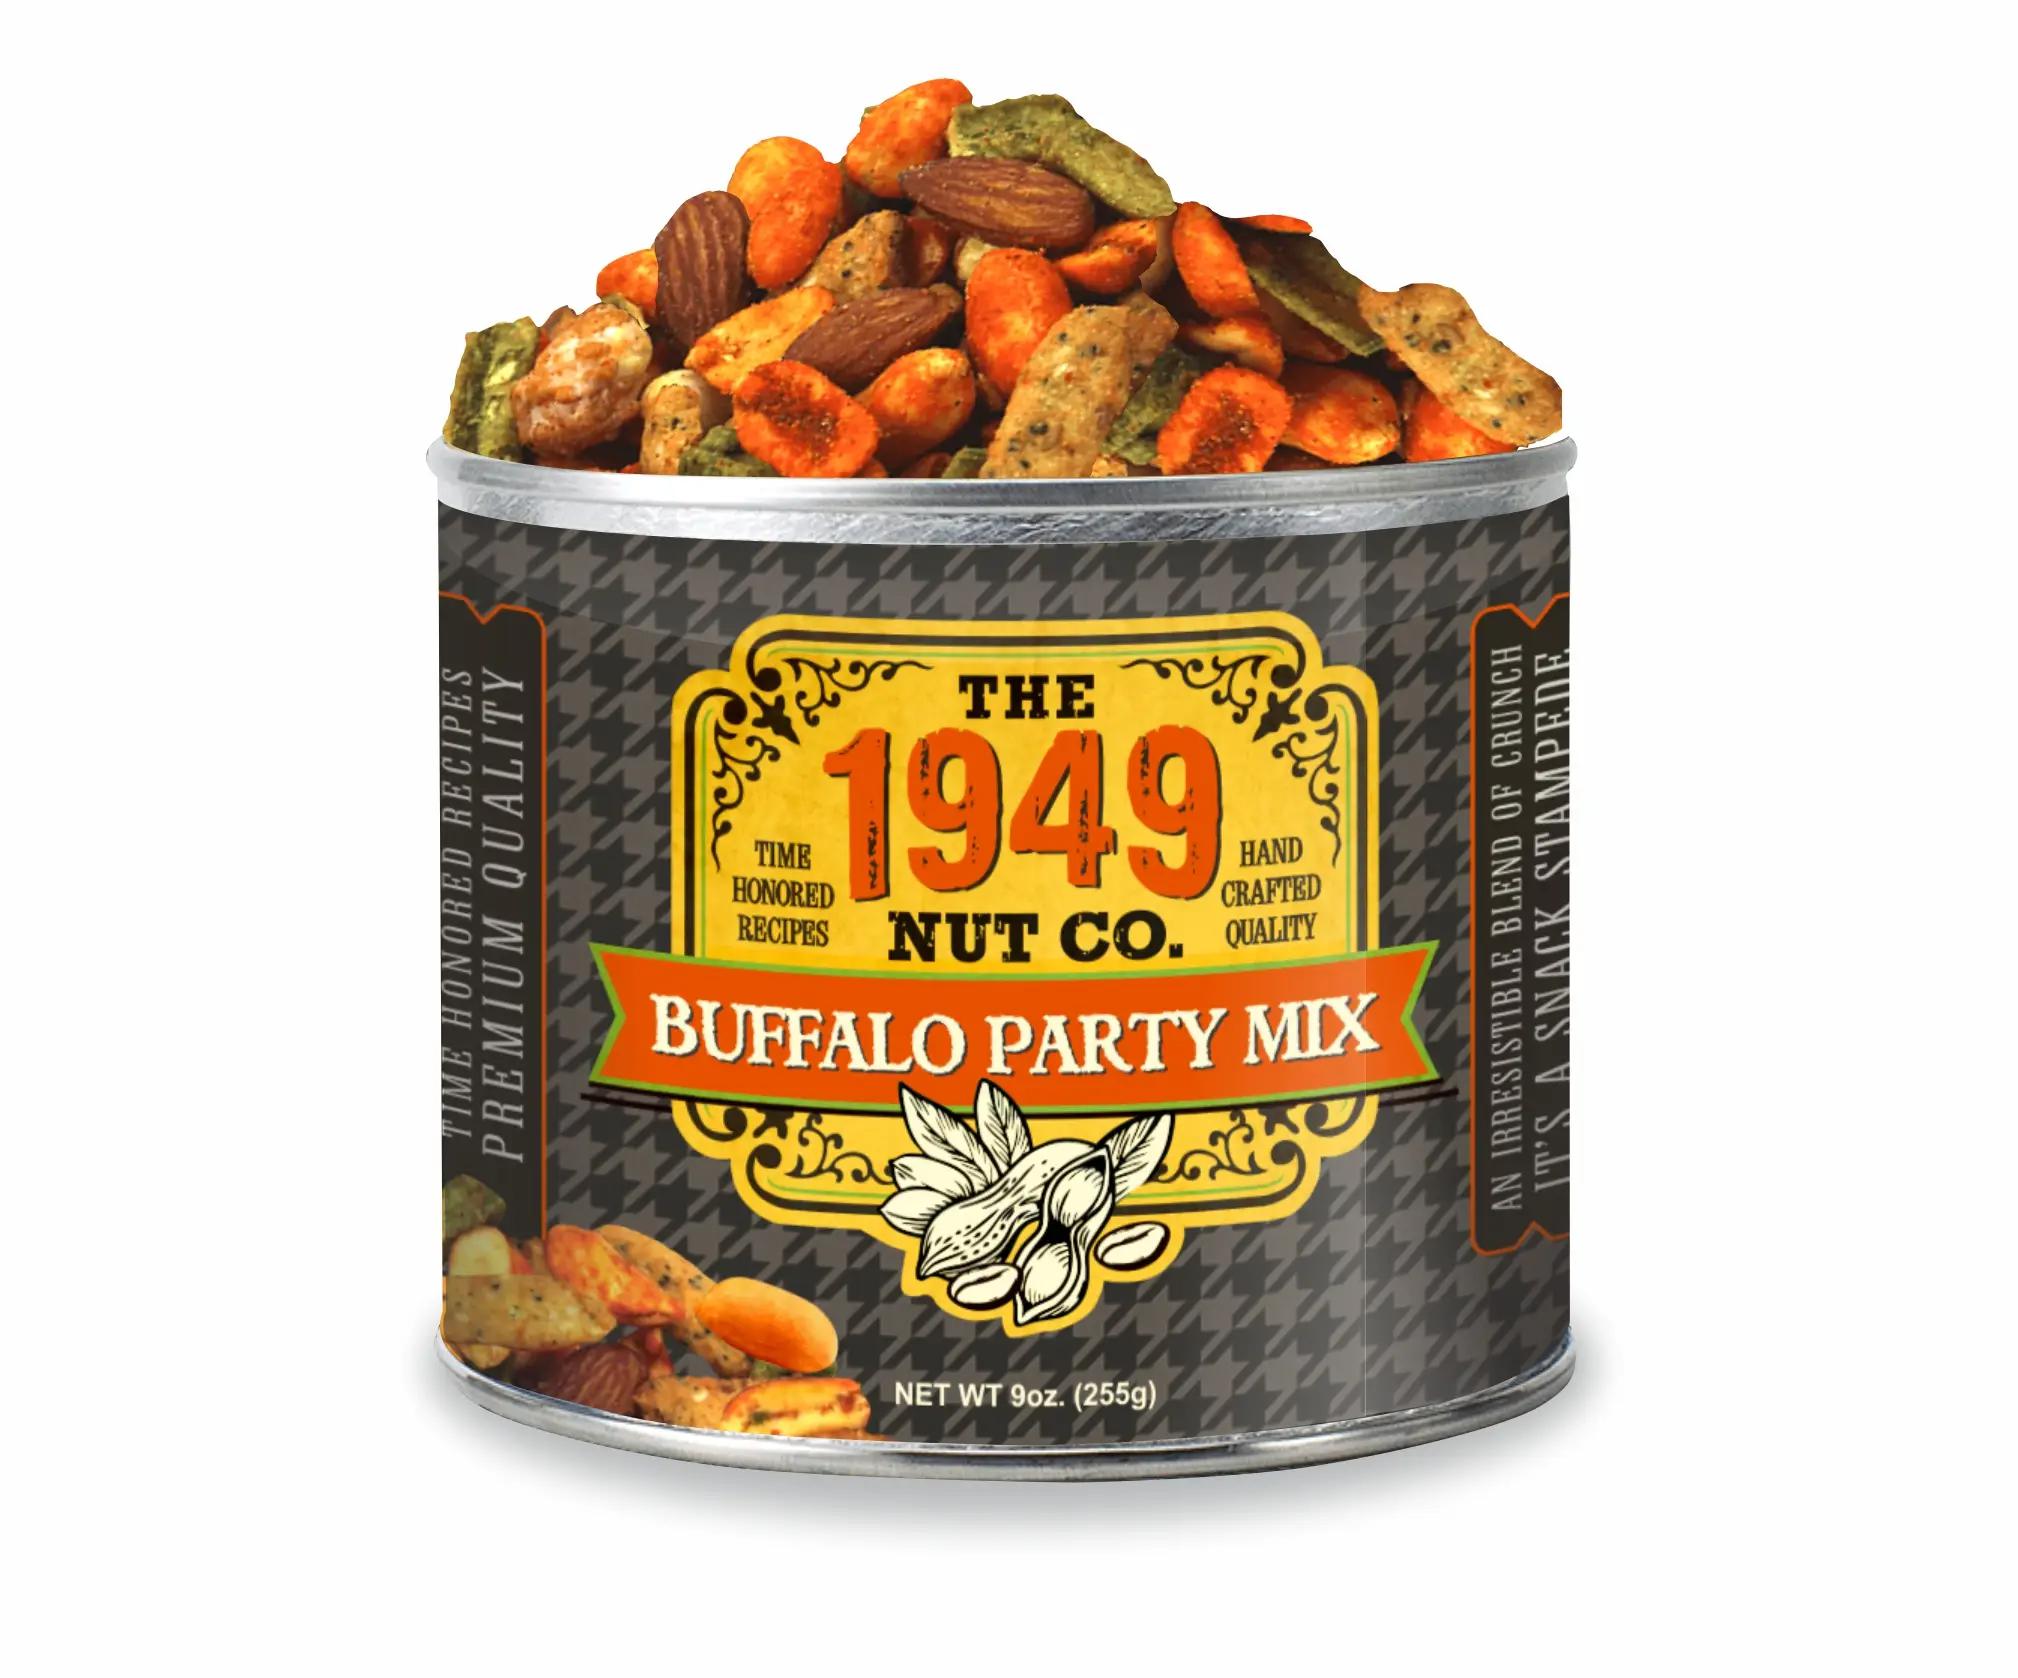 1949 Nut Company (10 oz)-grocery-Eclipse Chocolate